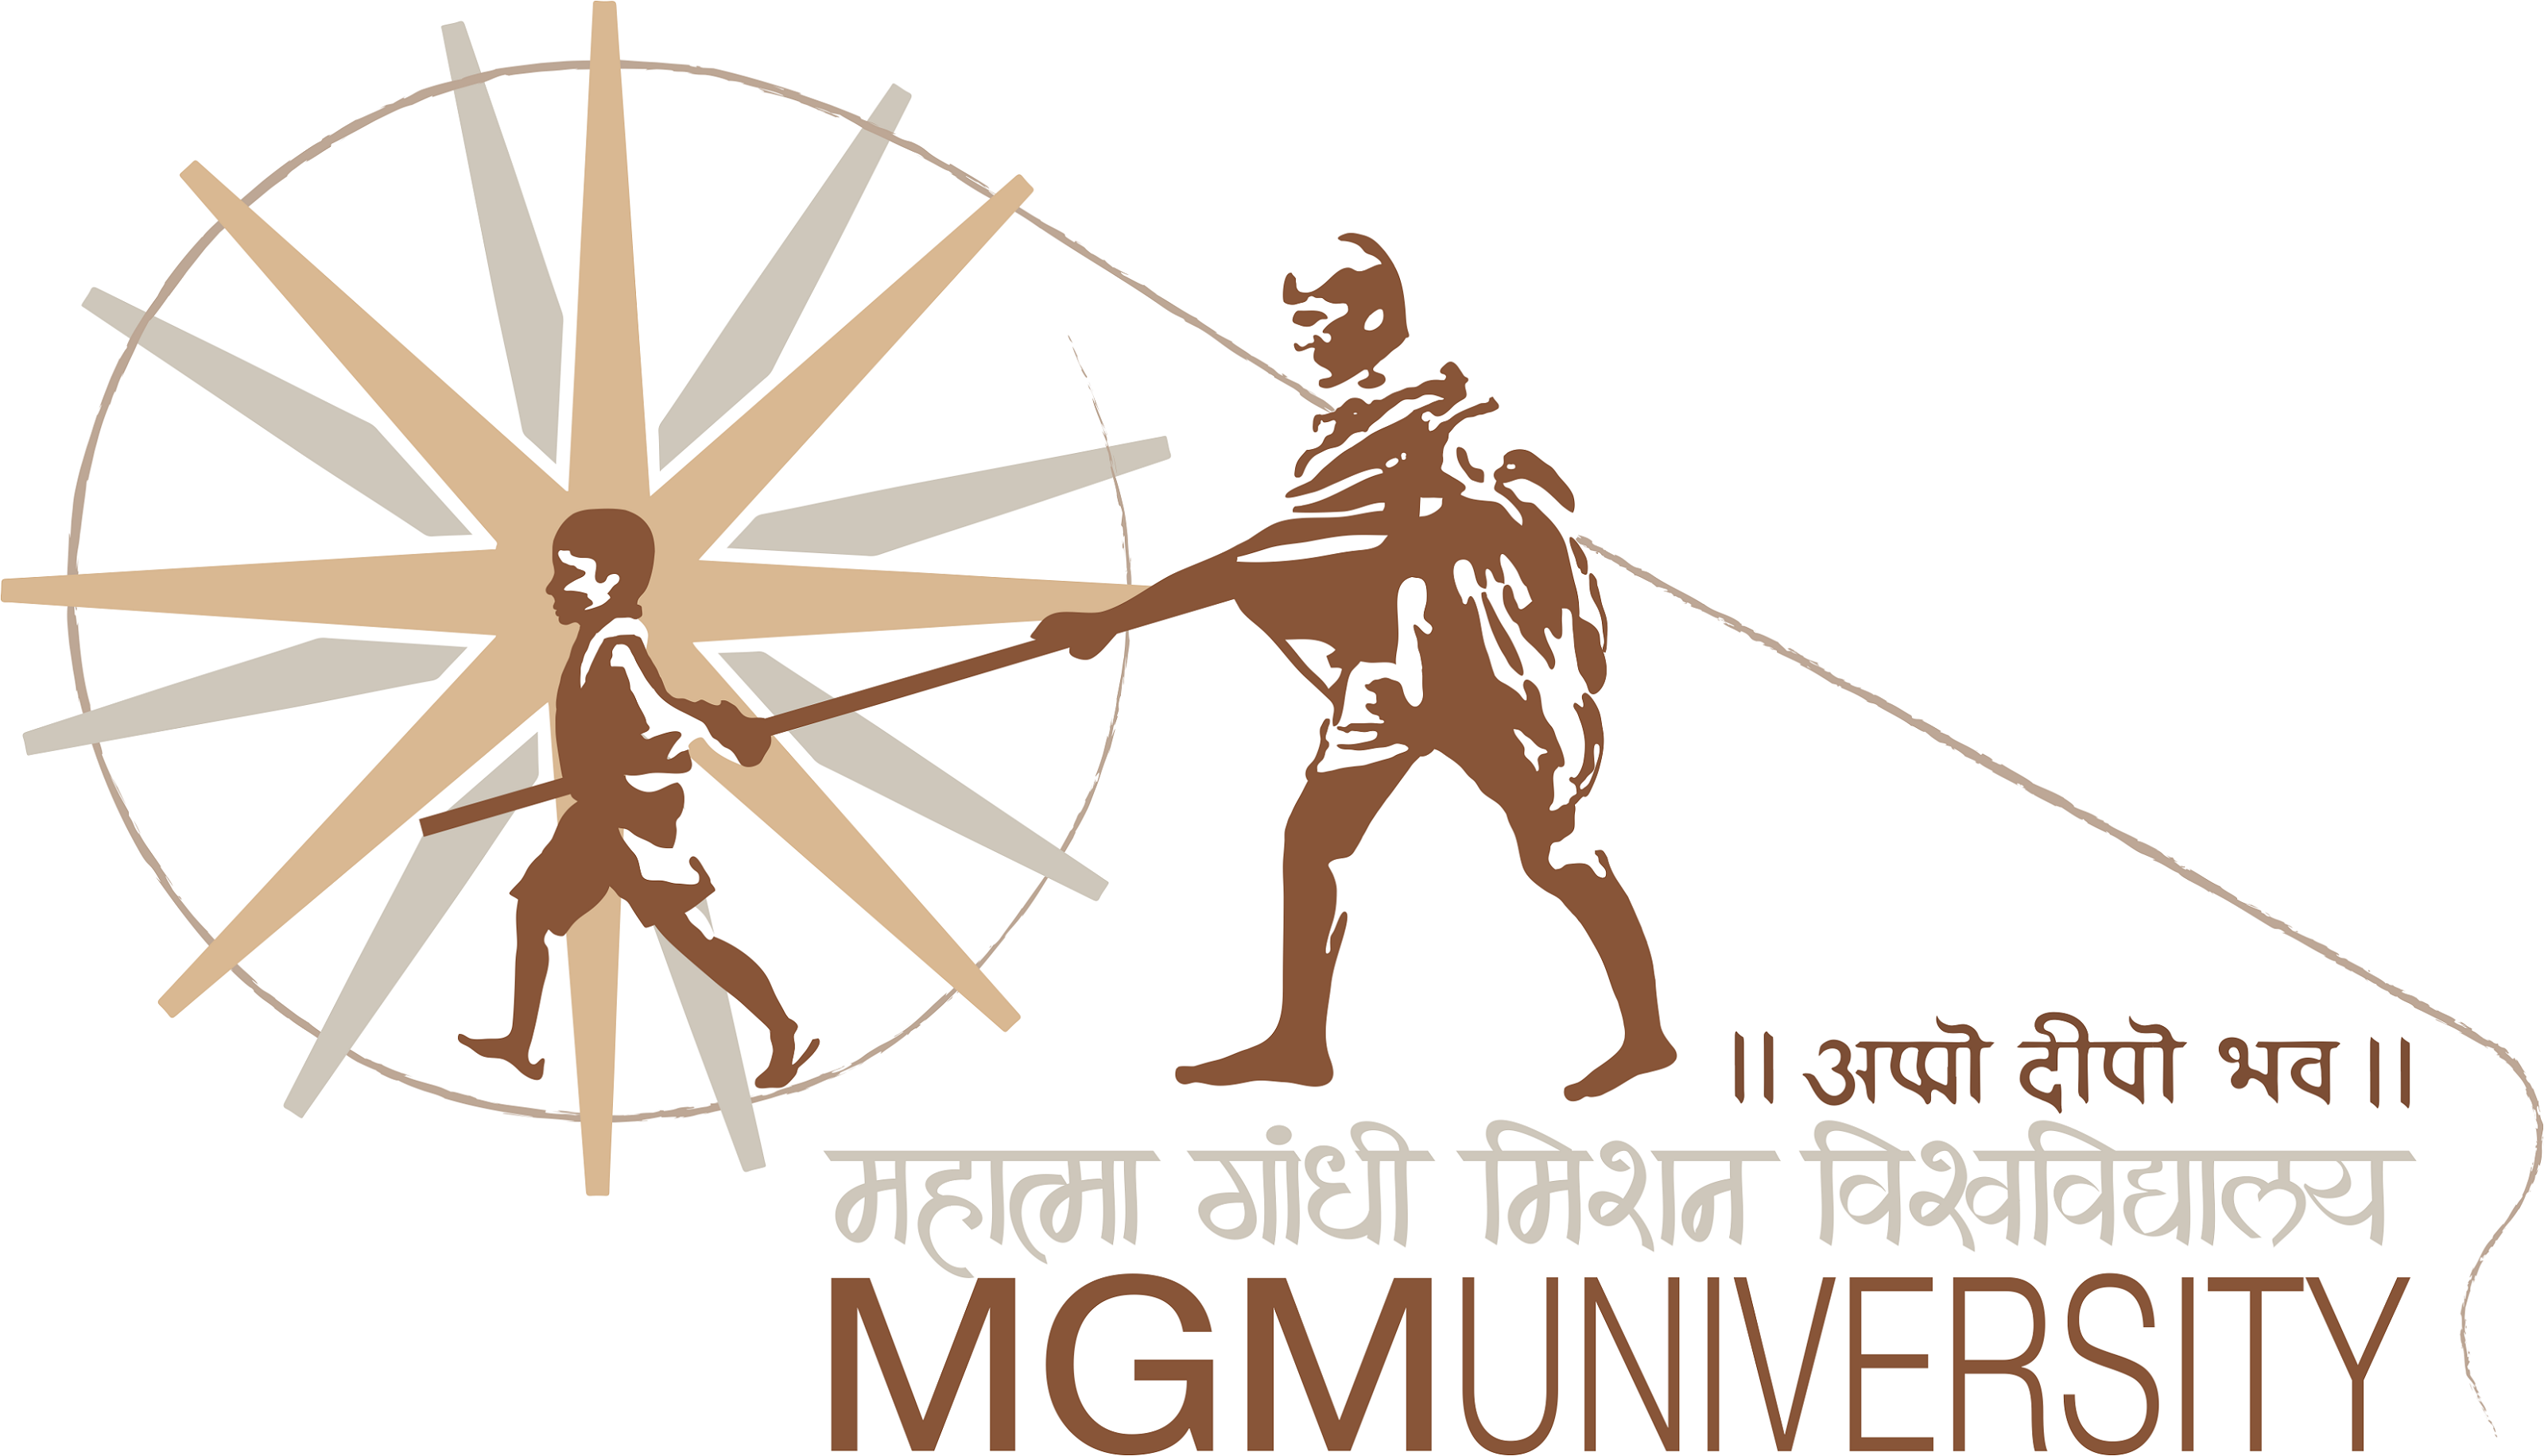 MGM University Chhatrapati Sambhajinagar